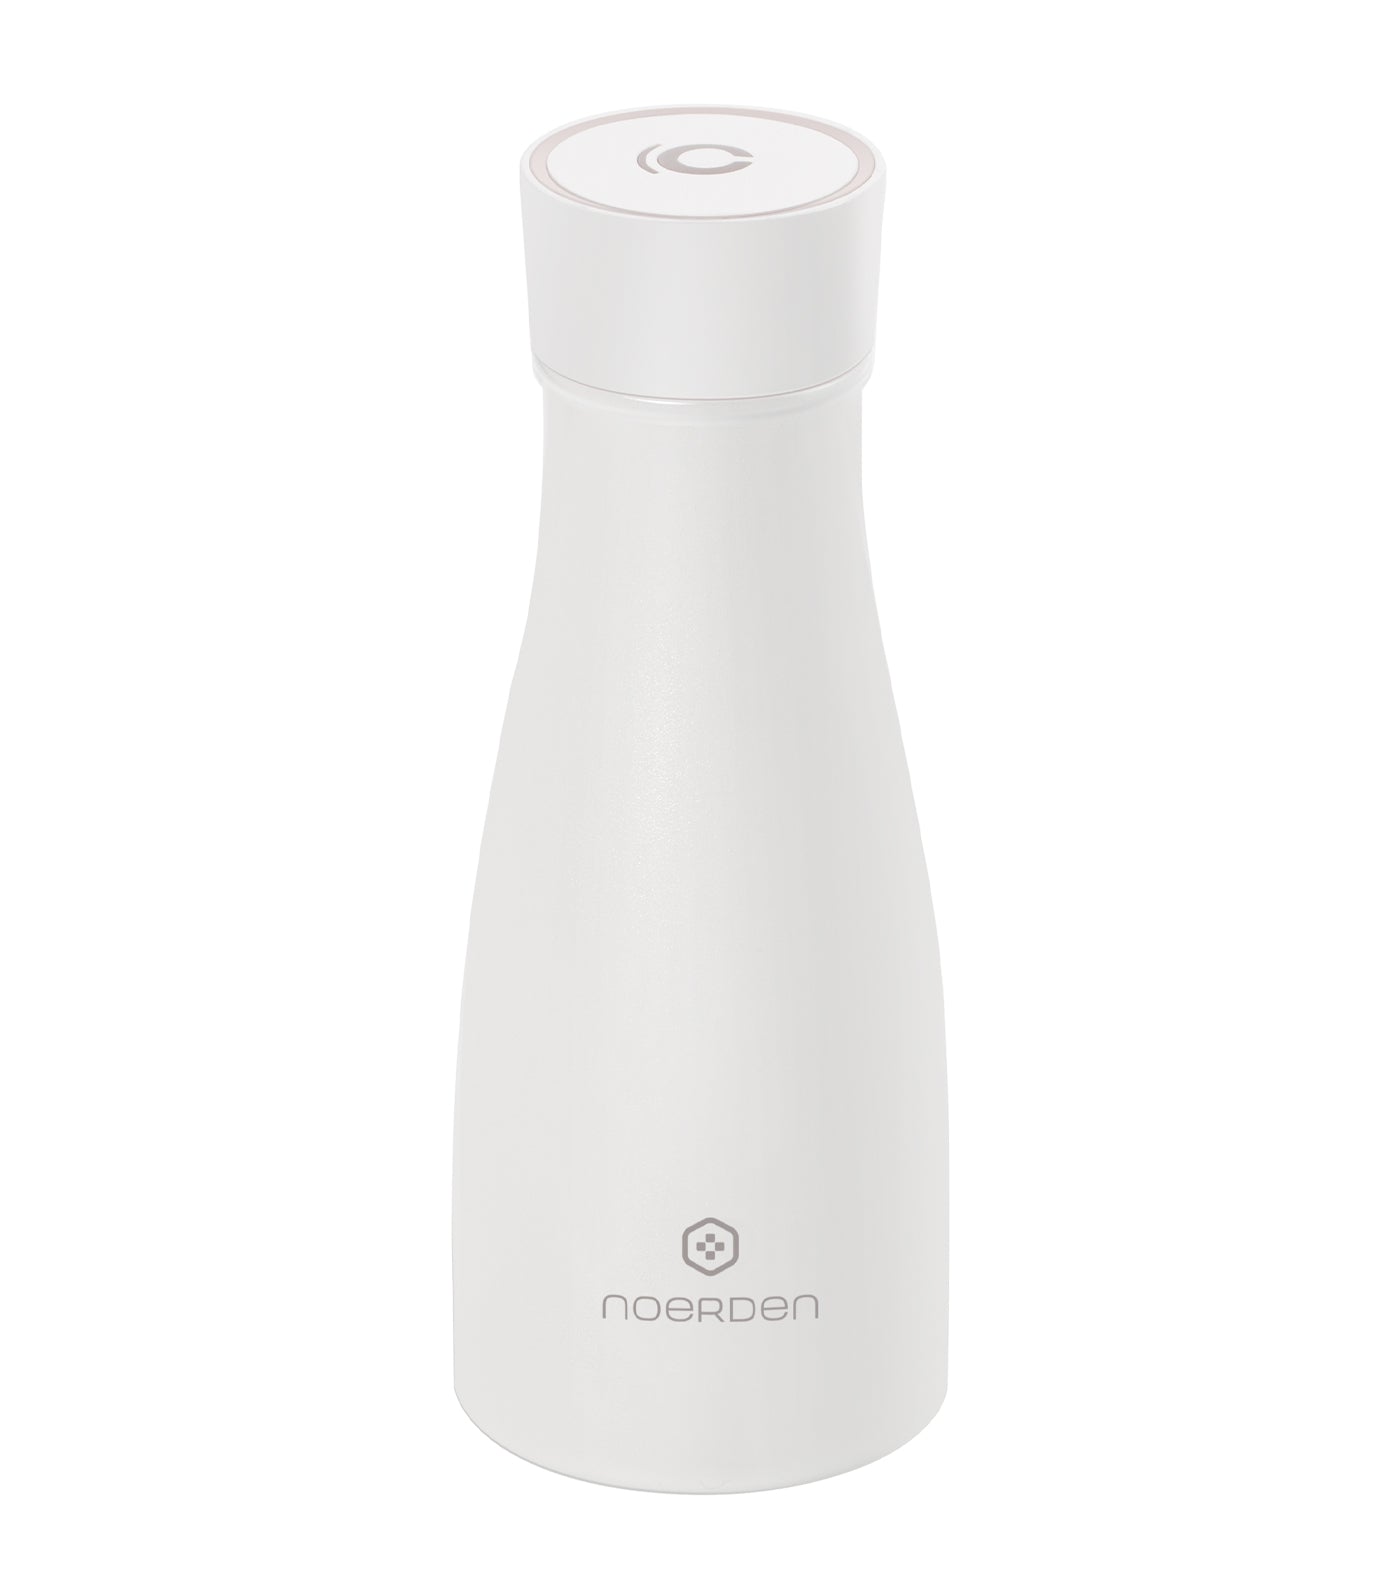 Noerden LIZ Smart Bottle, White - 350ml